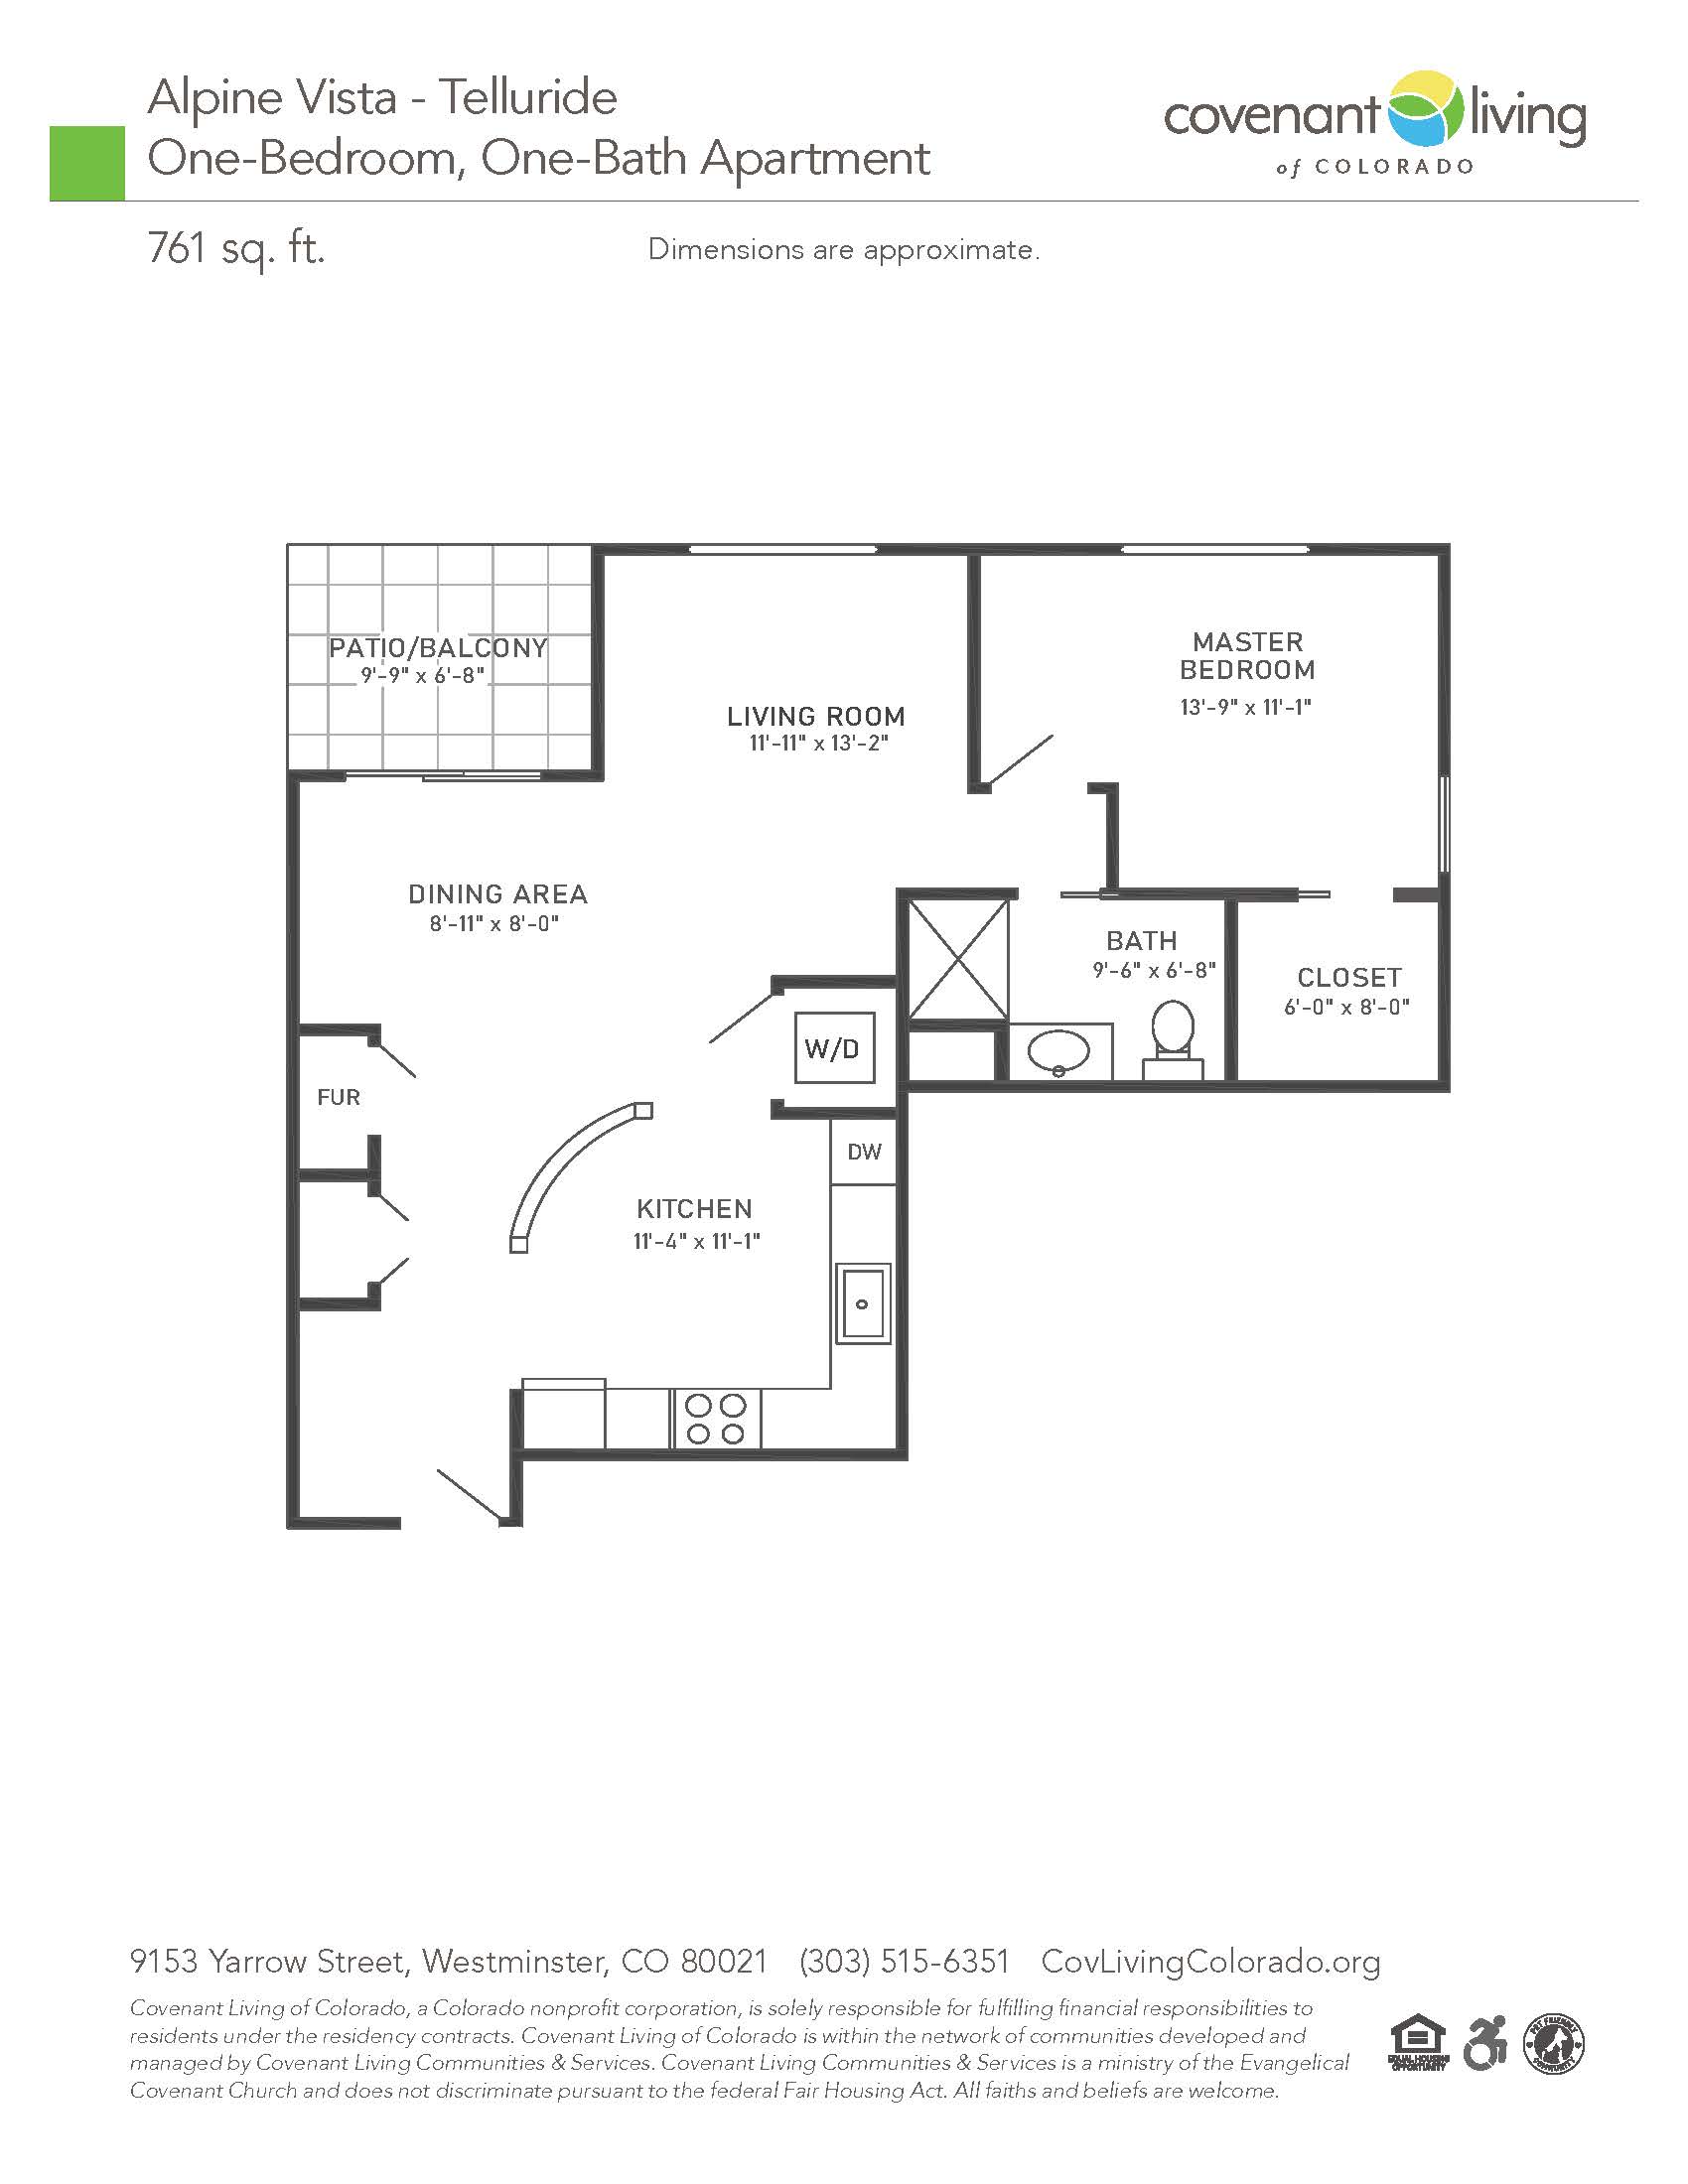 Residential 1 bed floor plan